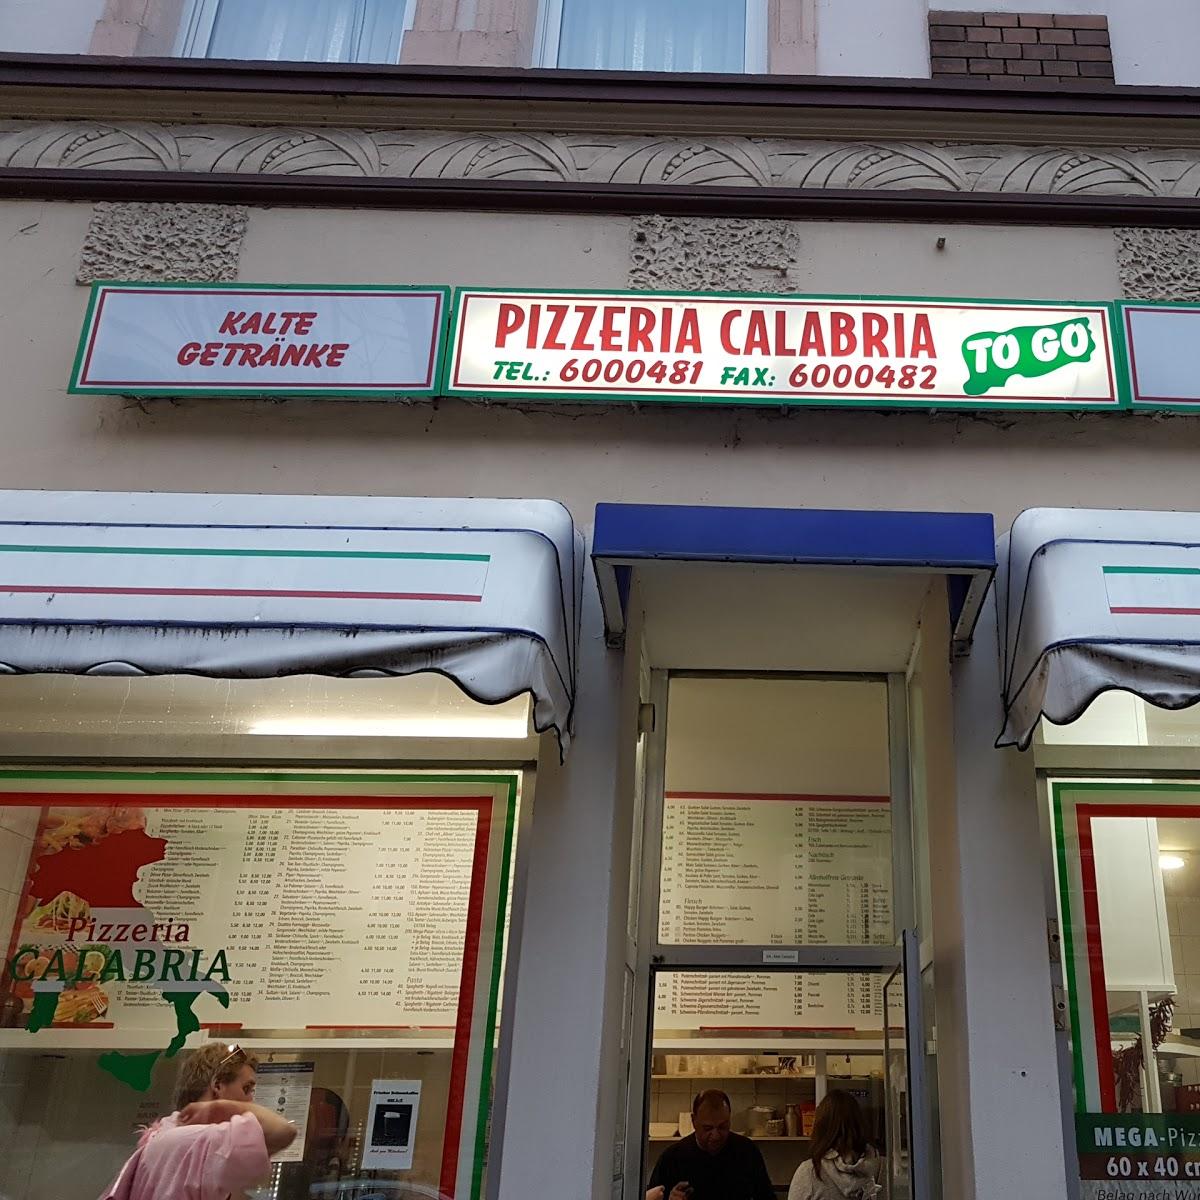 Restaurant "Pizzeria Calabria" in Wiesbaden